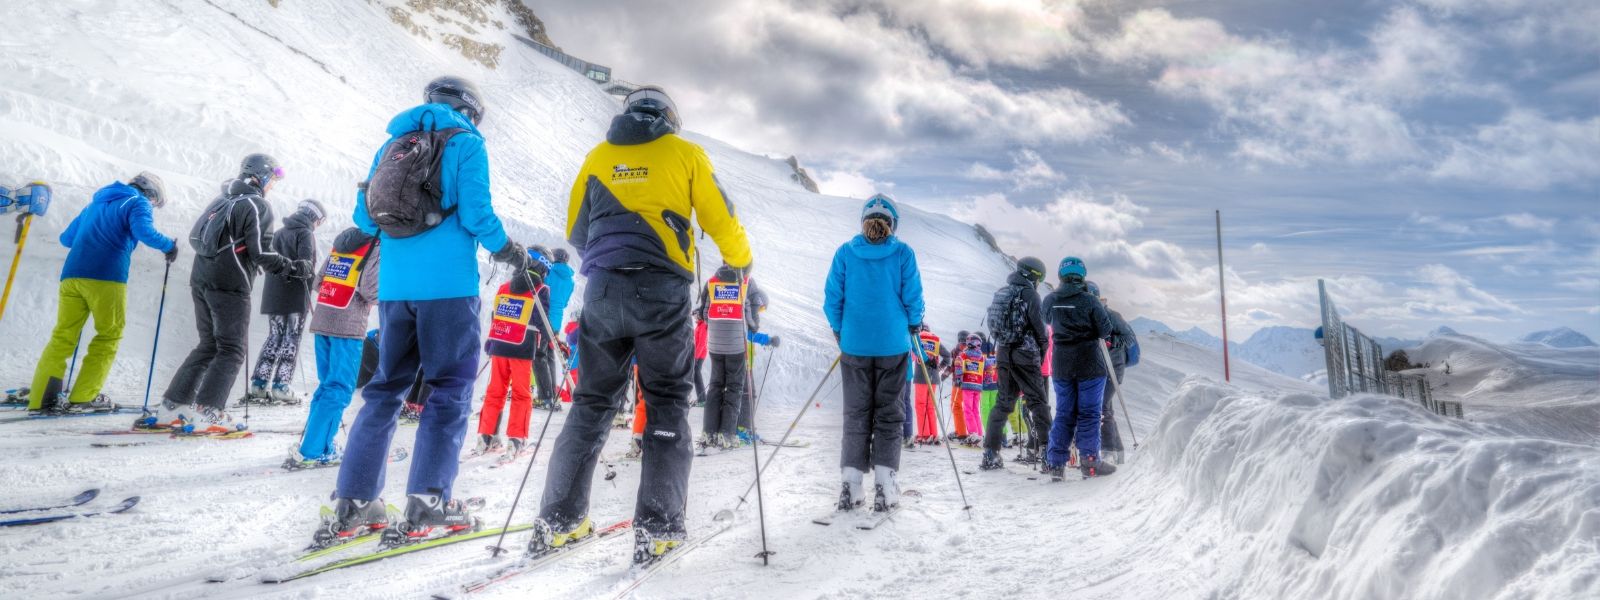 cestovní pojištění se hodí nejen na horách při lyžování